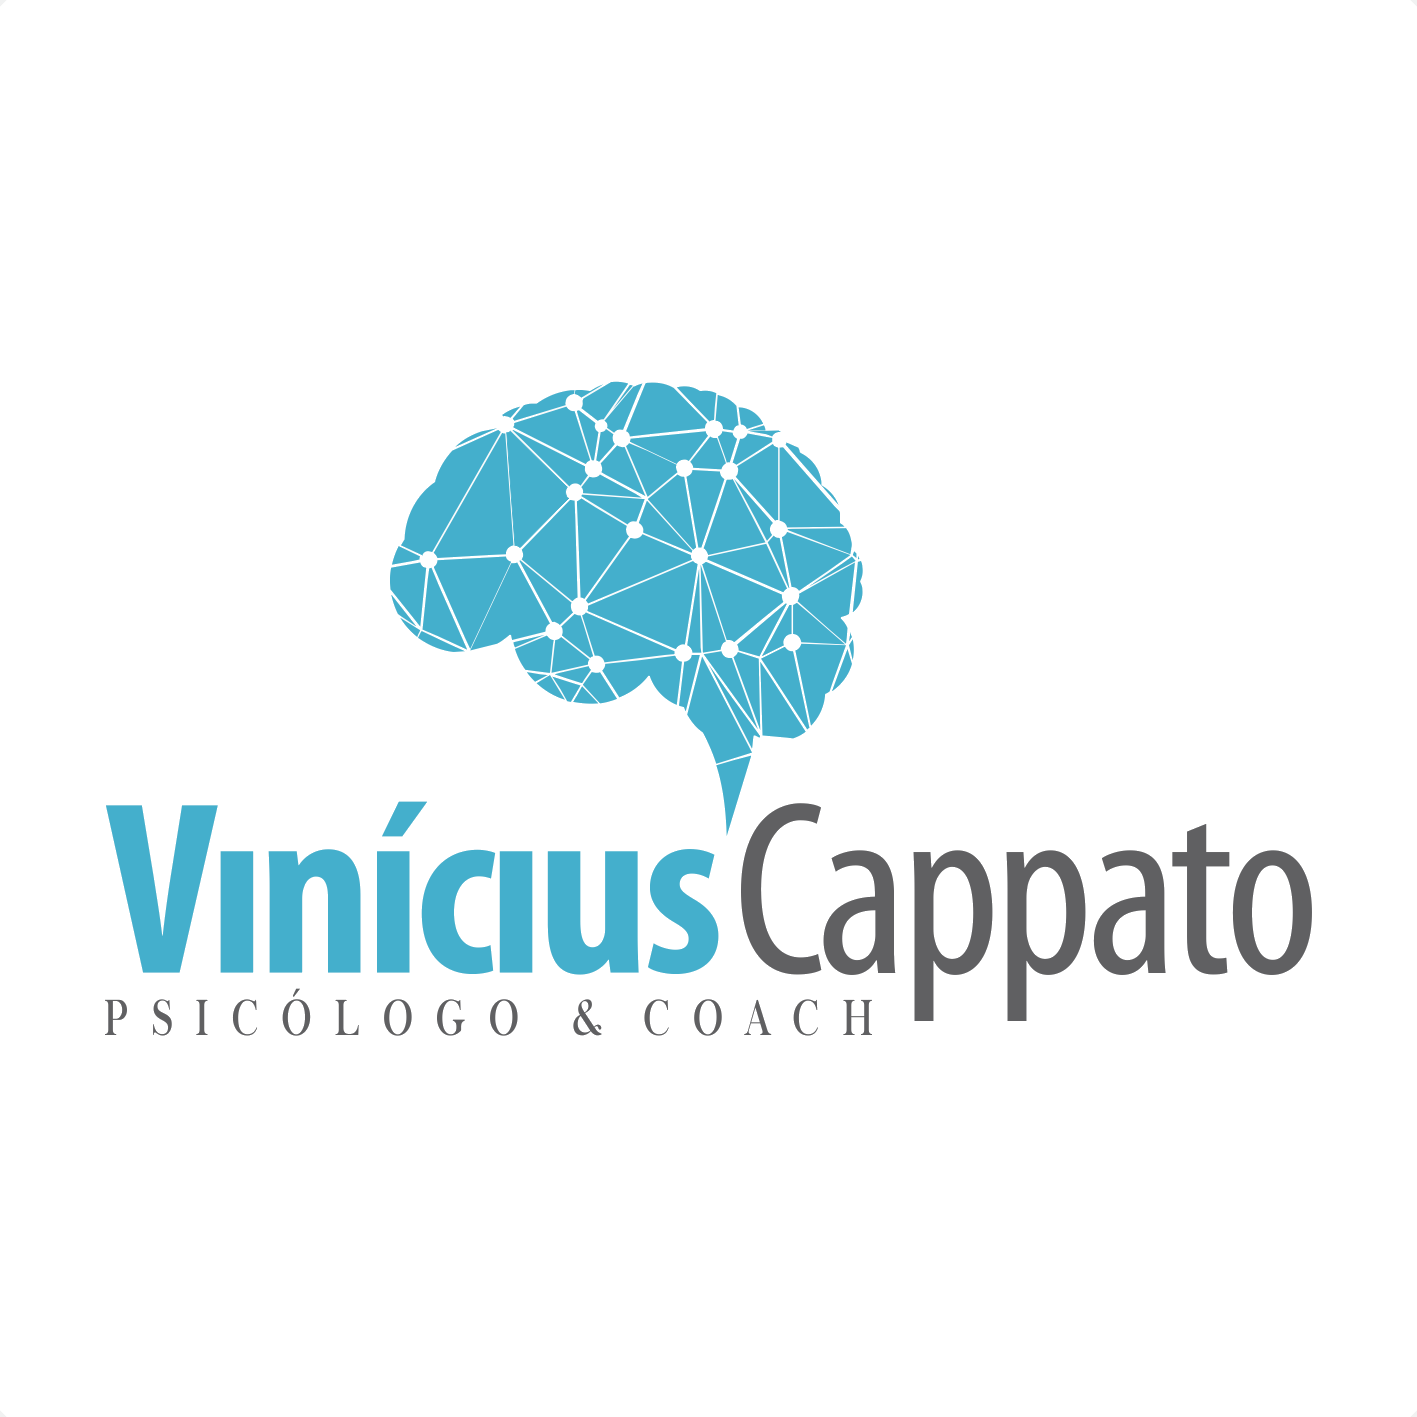 Vinicius Cappato